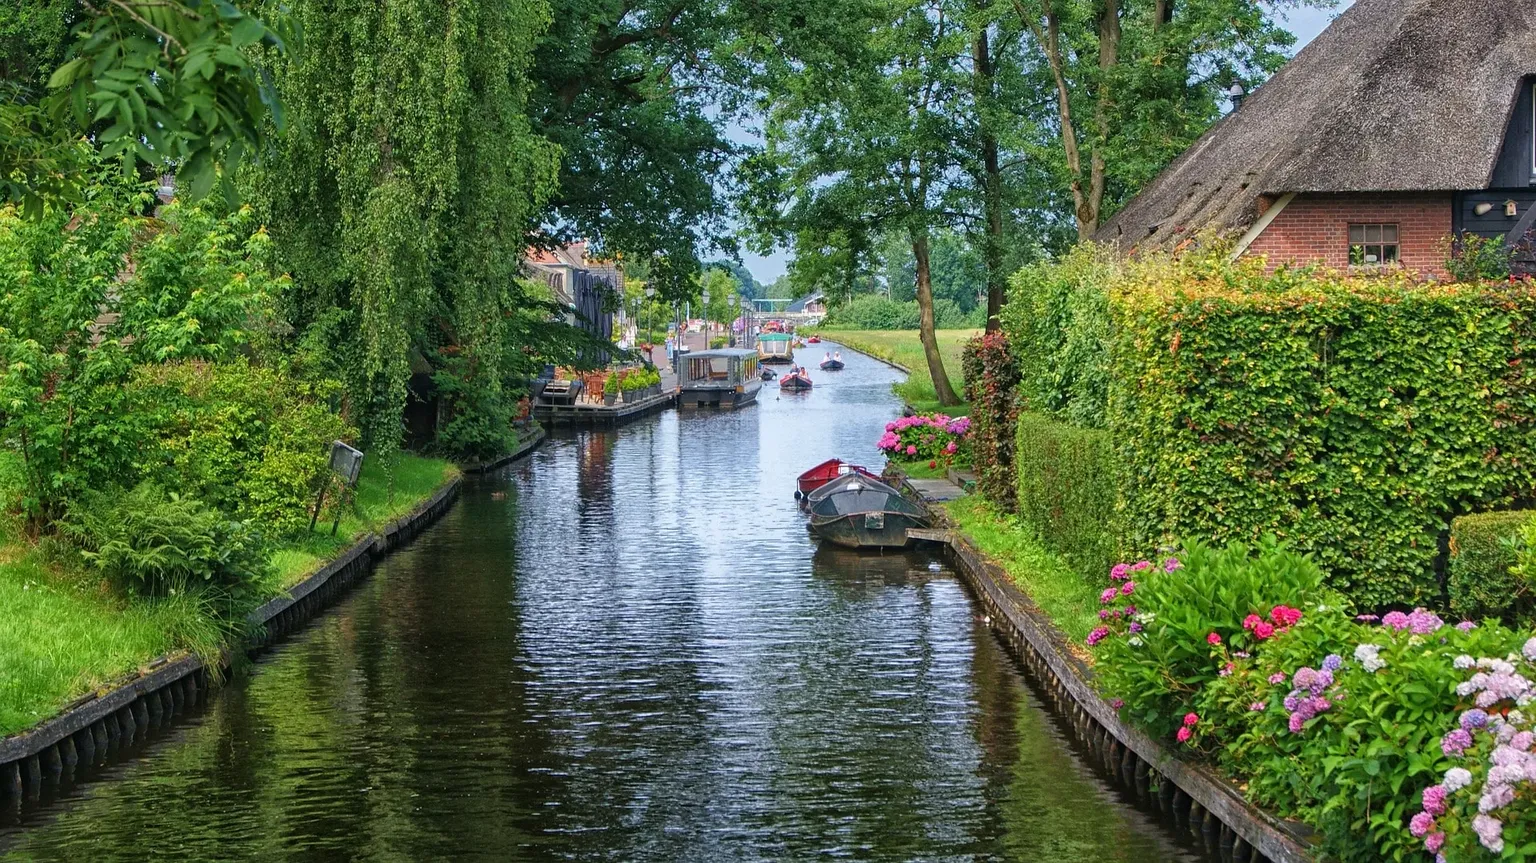 Giethoorn | Overijssel Region, Netherlands - Rated 3.1